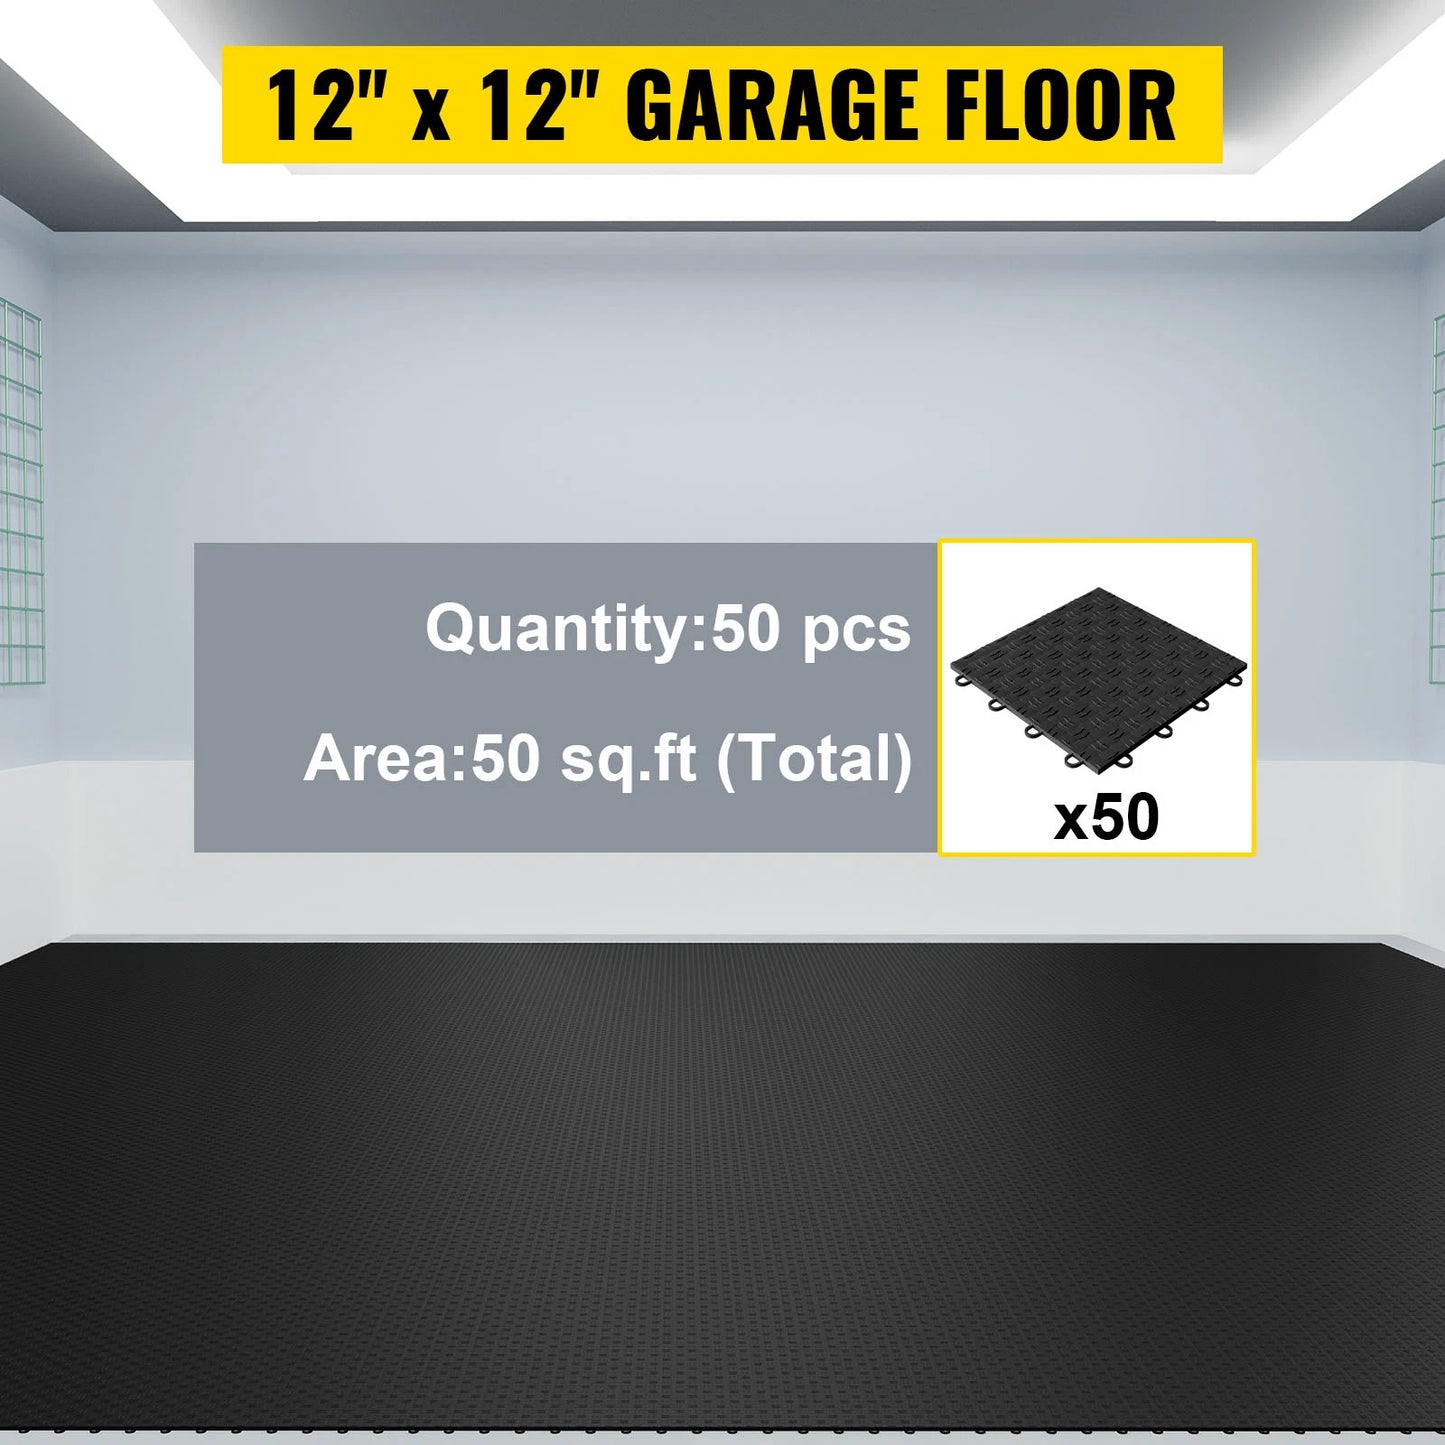 VEVOR Garage Tiles Interlocking, 12'' x 12'', 50 pcs, Black Garage Floor Covering Tiles, Non-Slip Diamond Plate Garage Flooring Tiles, Support up to 55,000 lbs for Basements, Gyms, Repair Shops